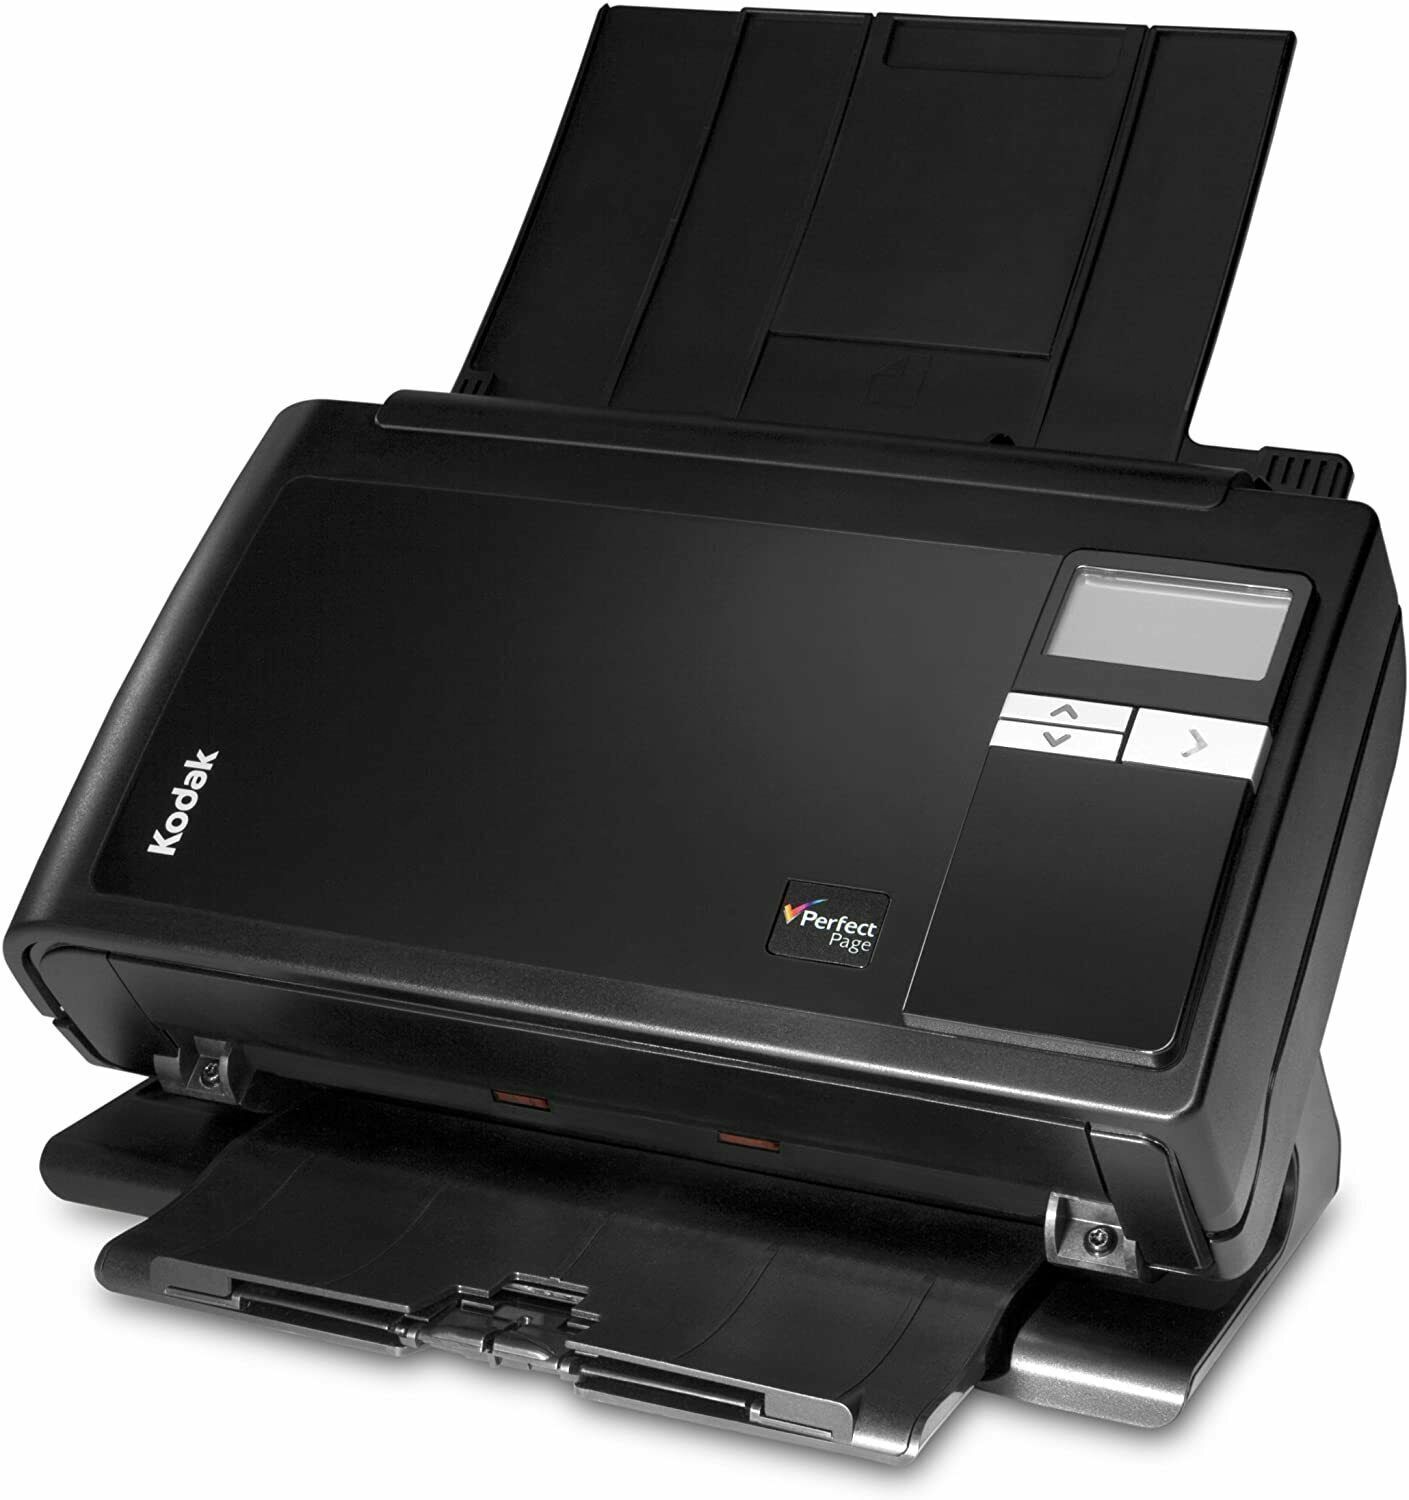 Kodak i2800 Document scanner (1552181)